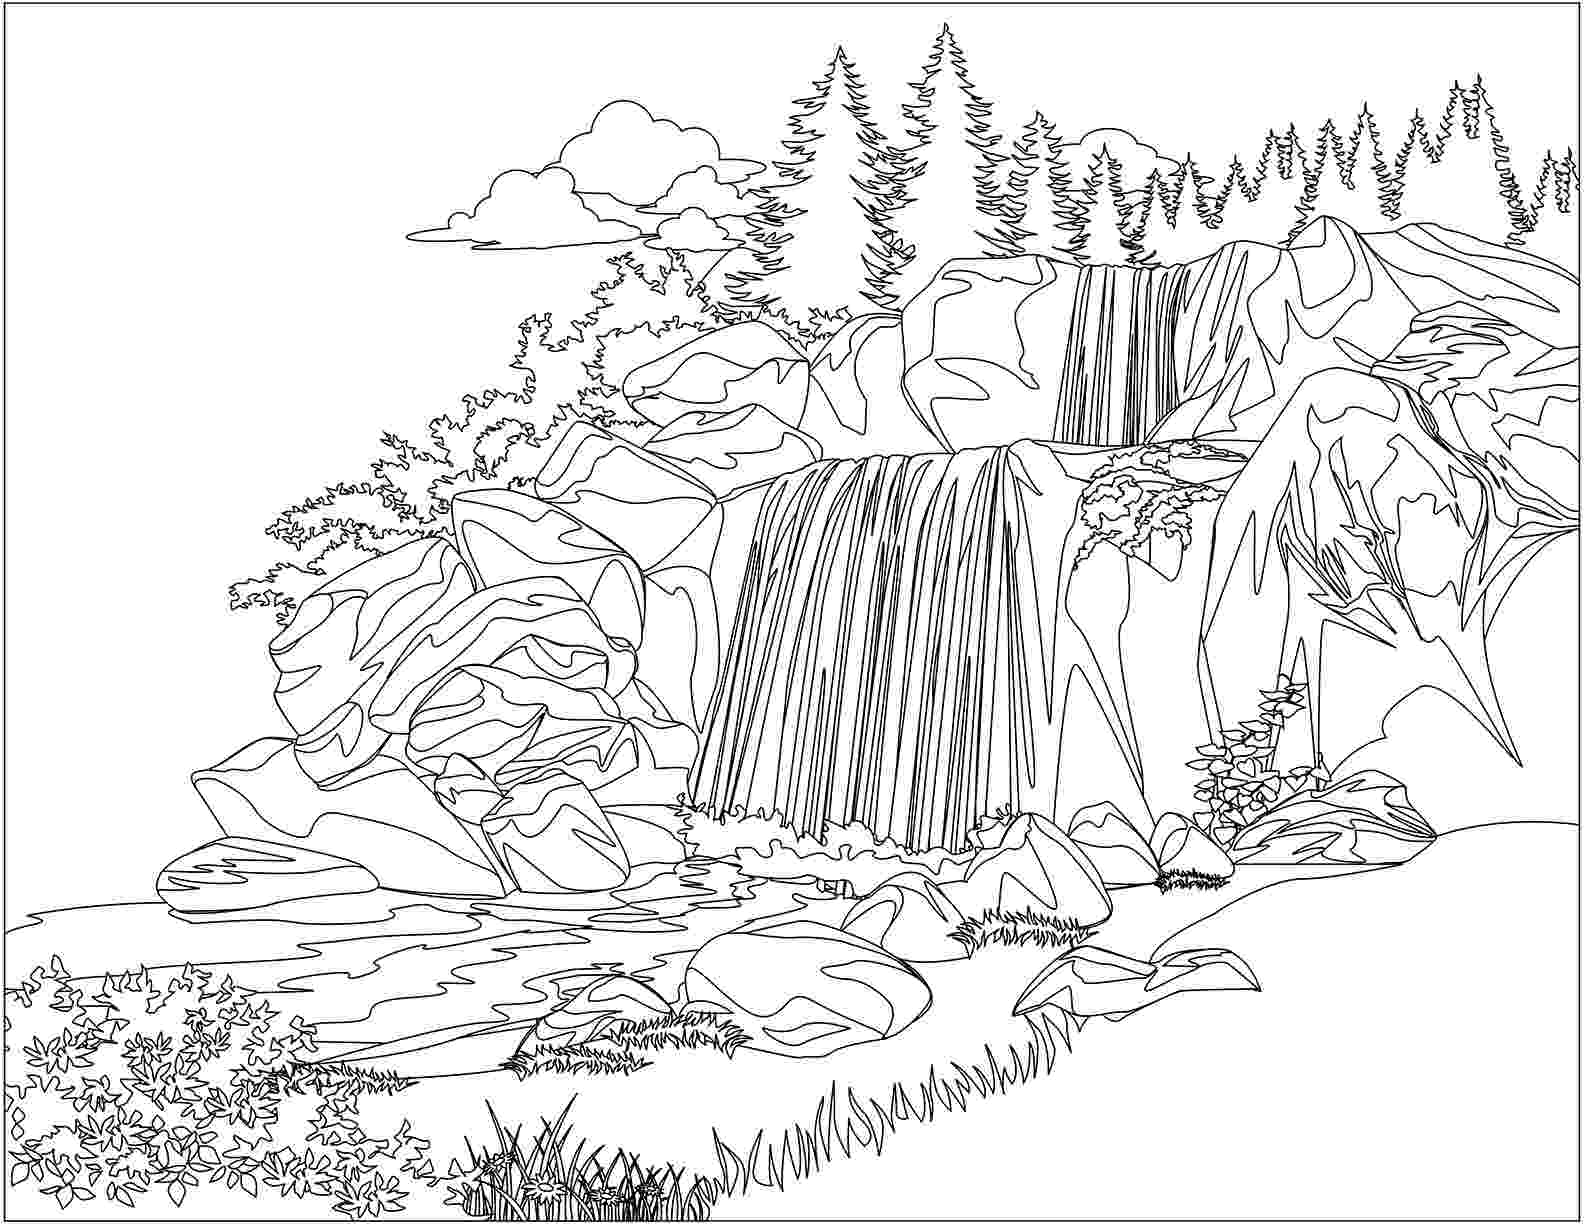 waterfall coloring page waterfall coloring pages coloring pages to download and page waterfall coloring 